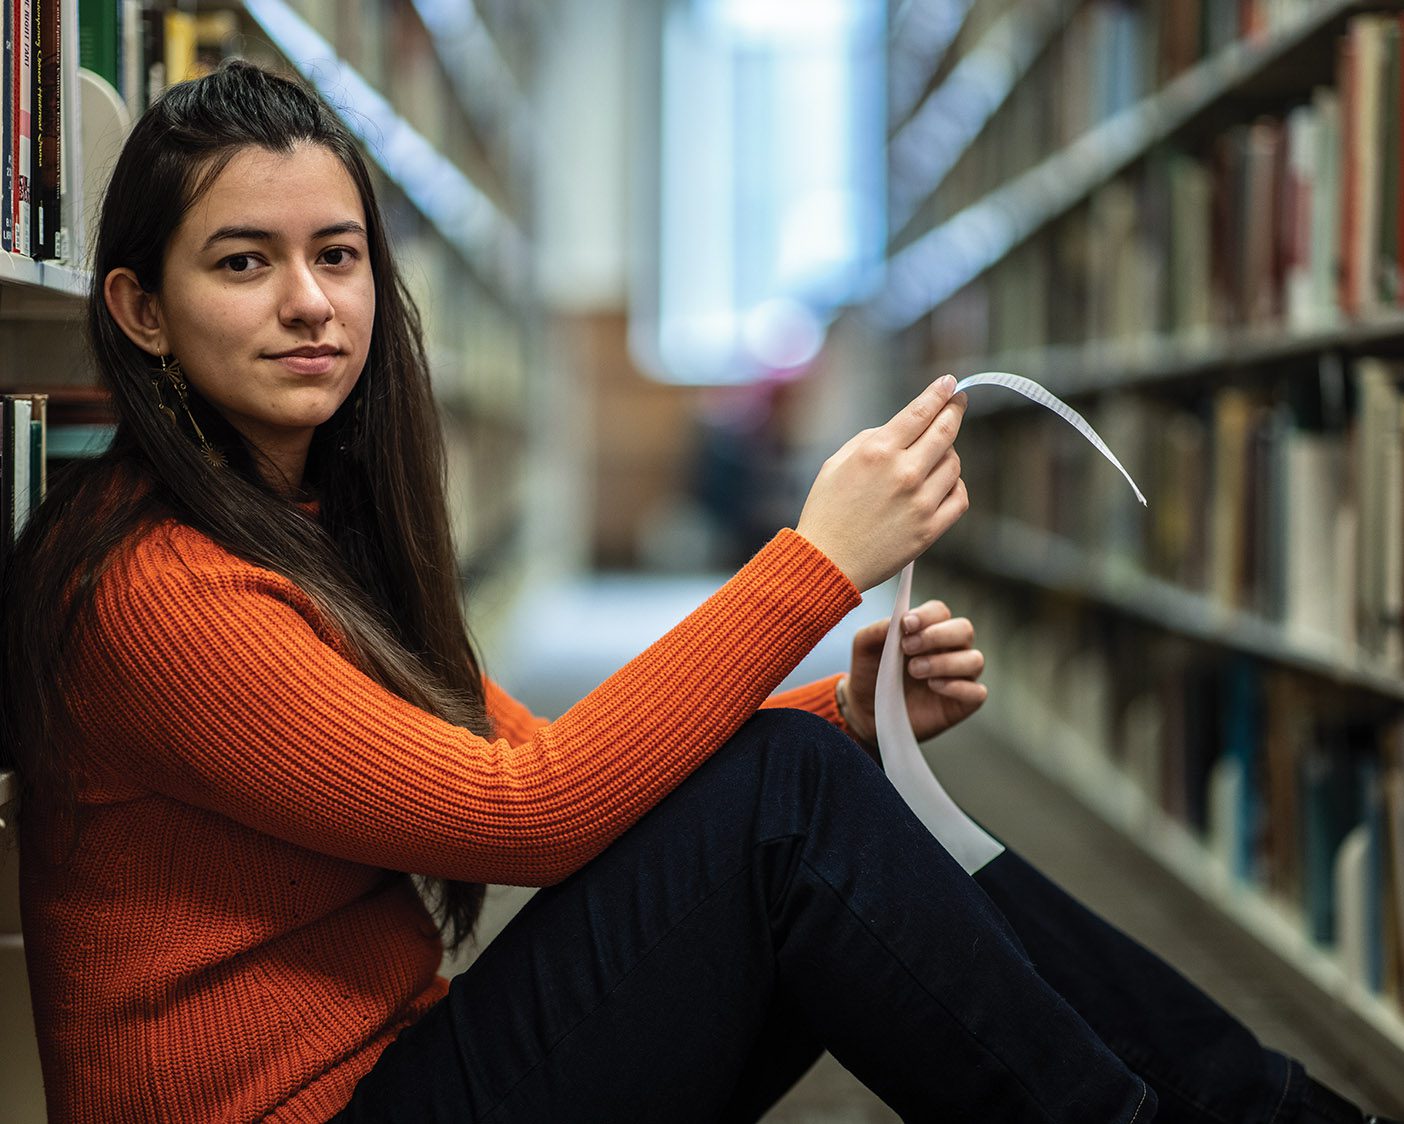 Kassandra Schreiber student portrait in library.